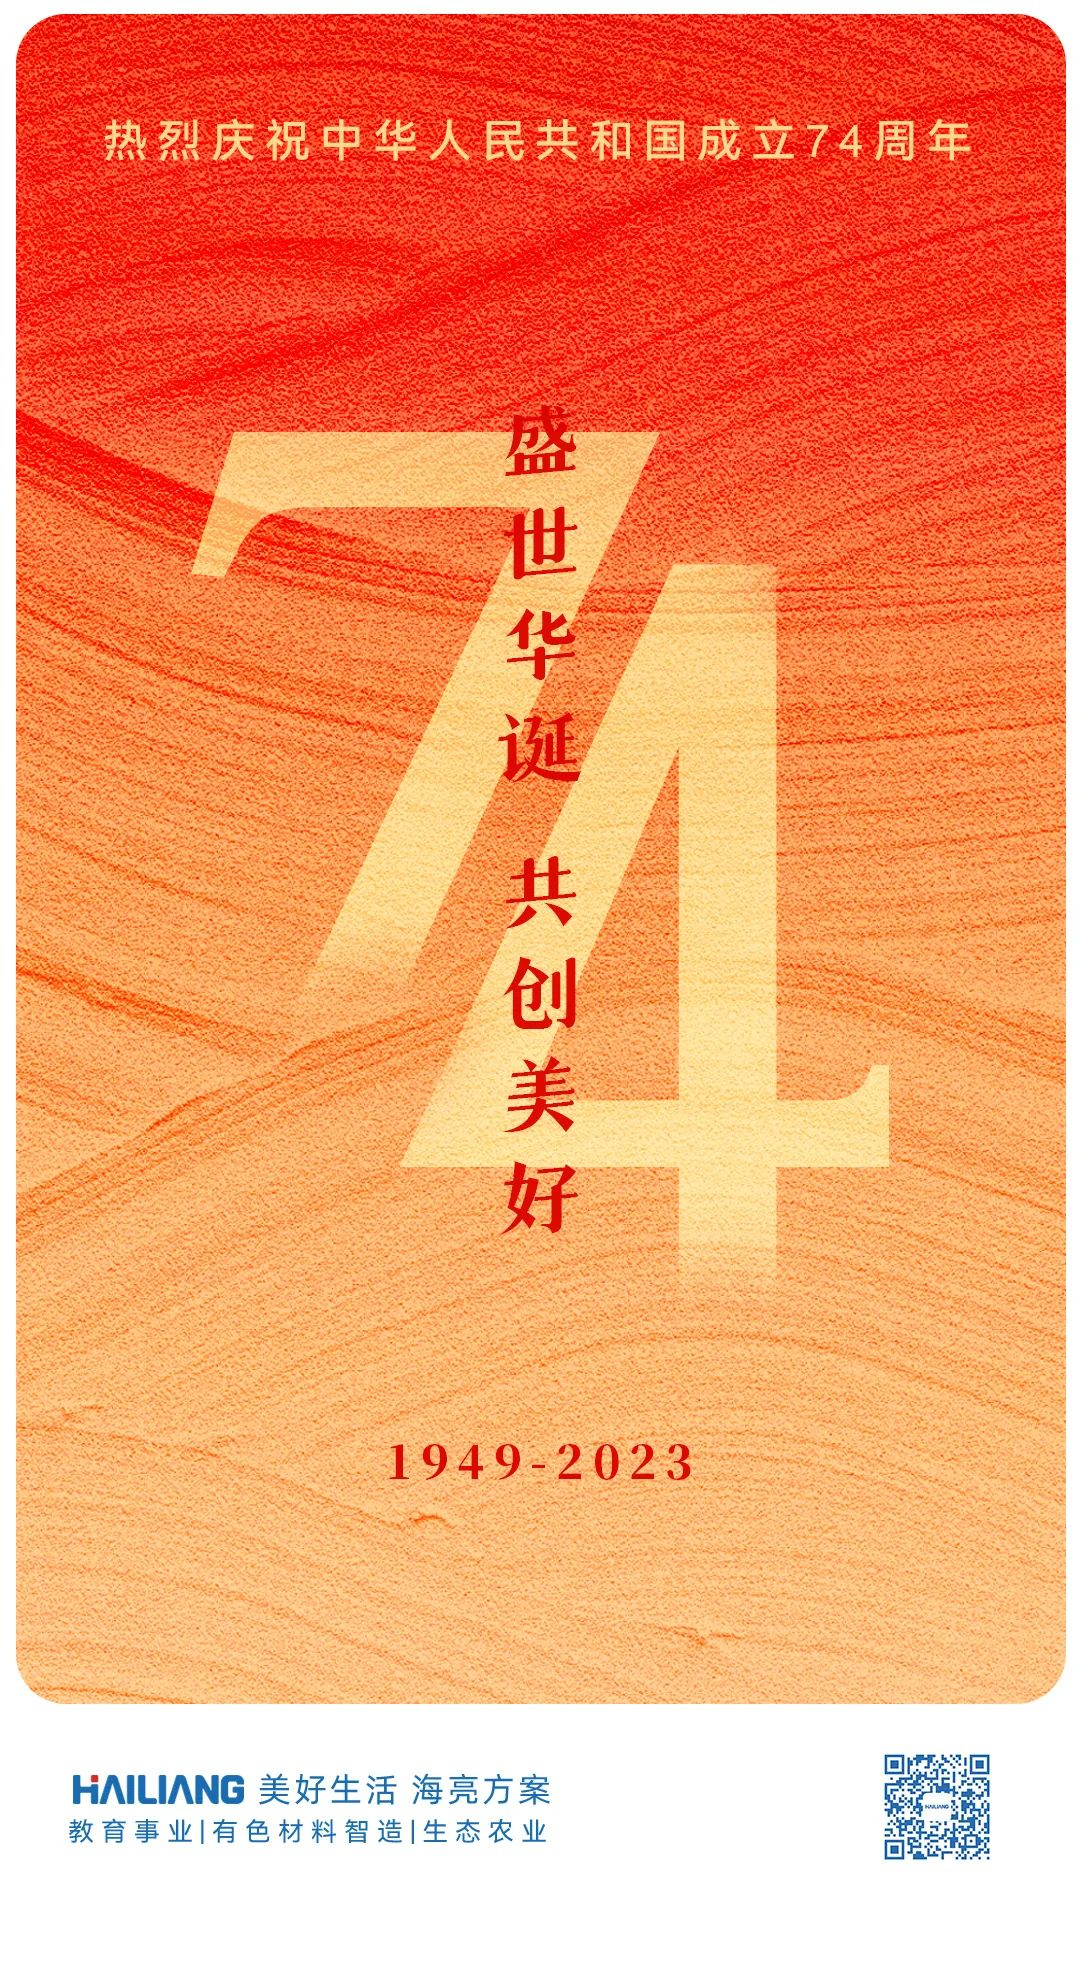 盛世华诞 共创美好丨热烈庆祝中华人民共和国成立74周年